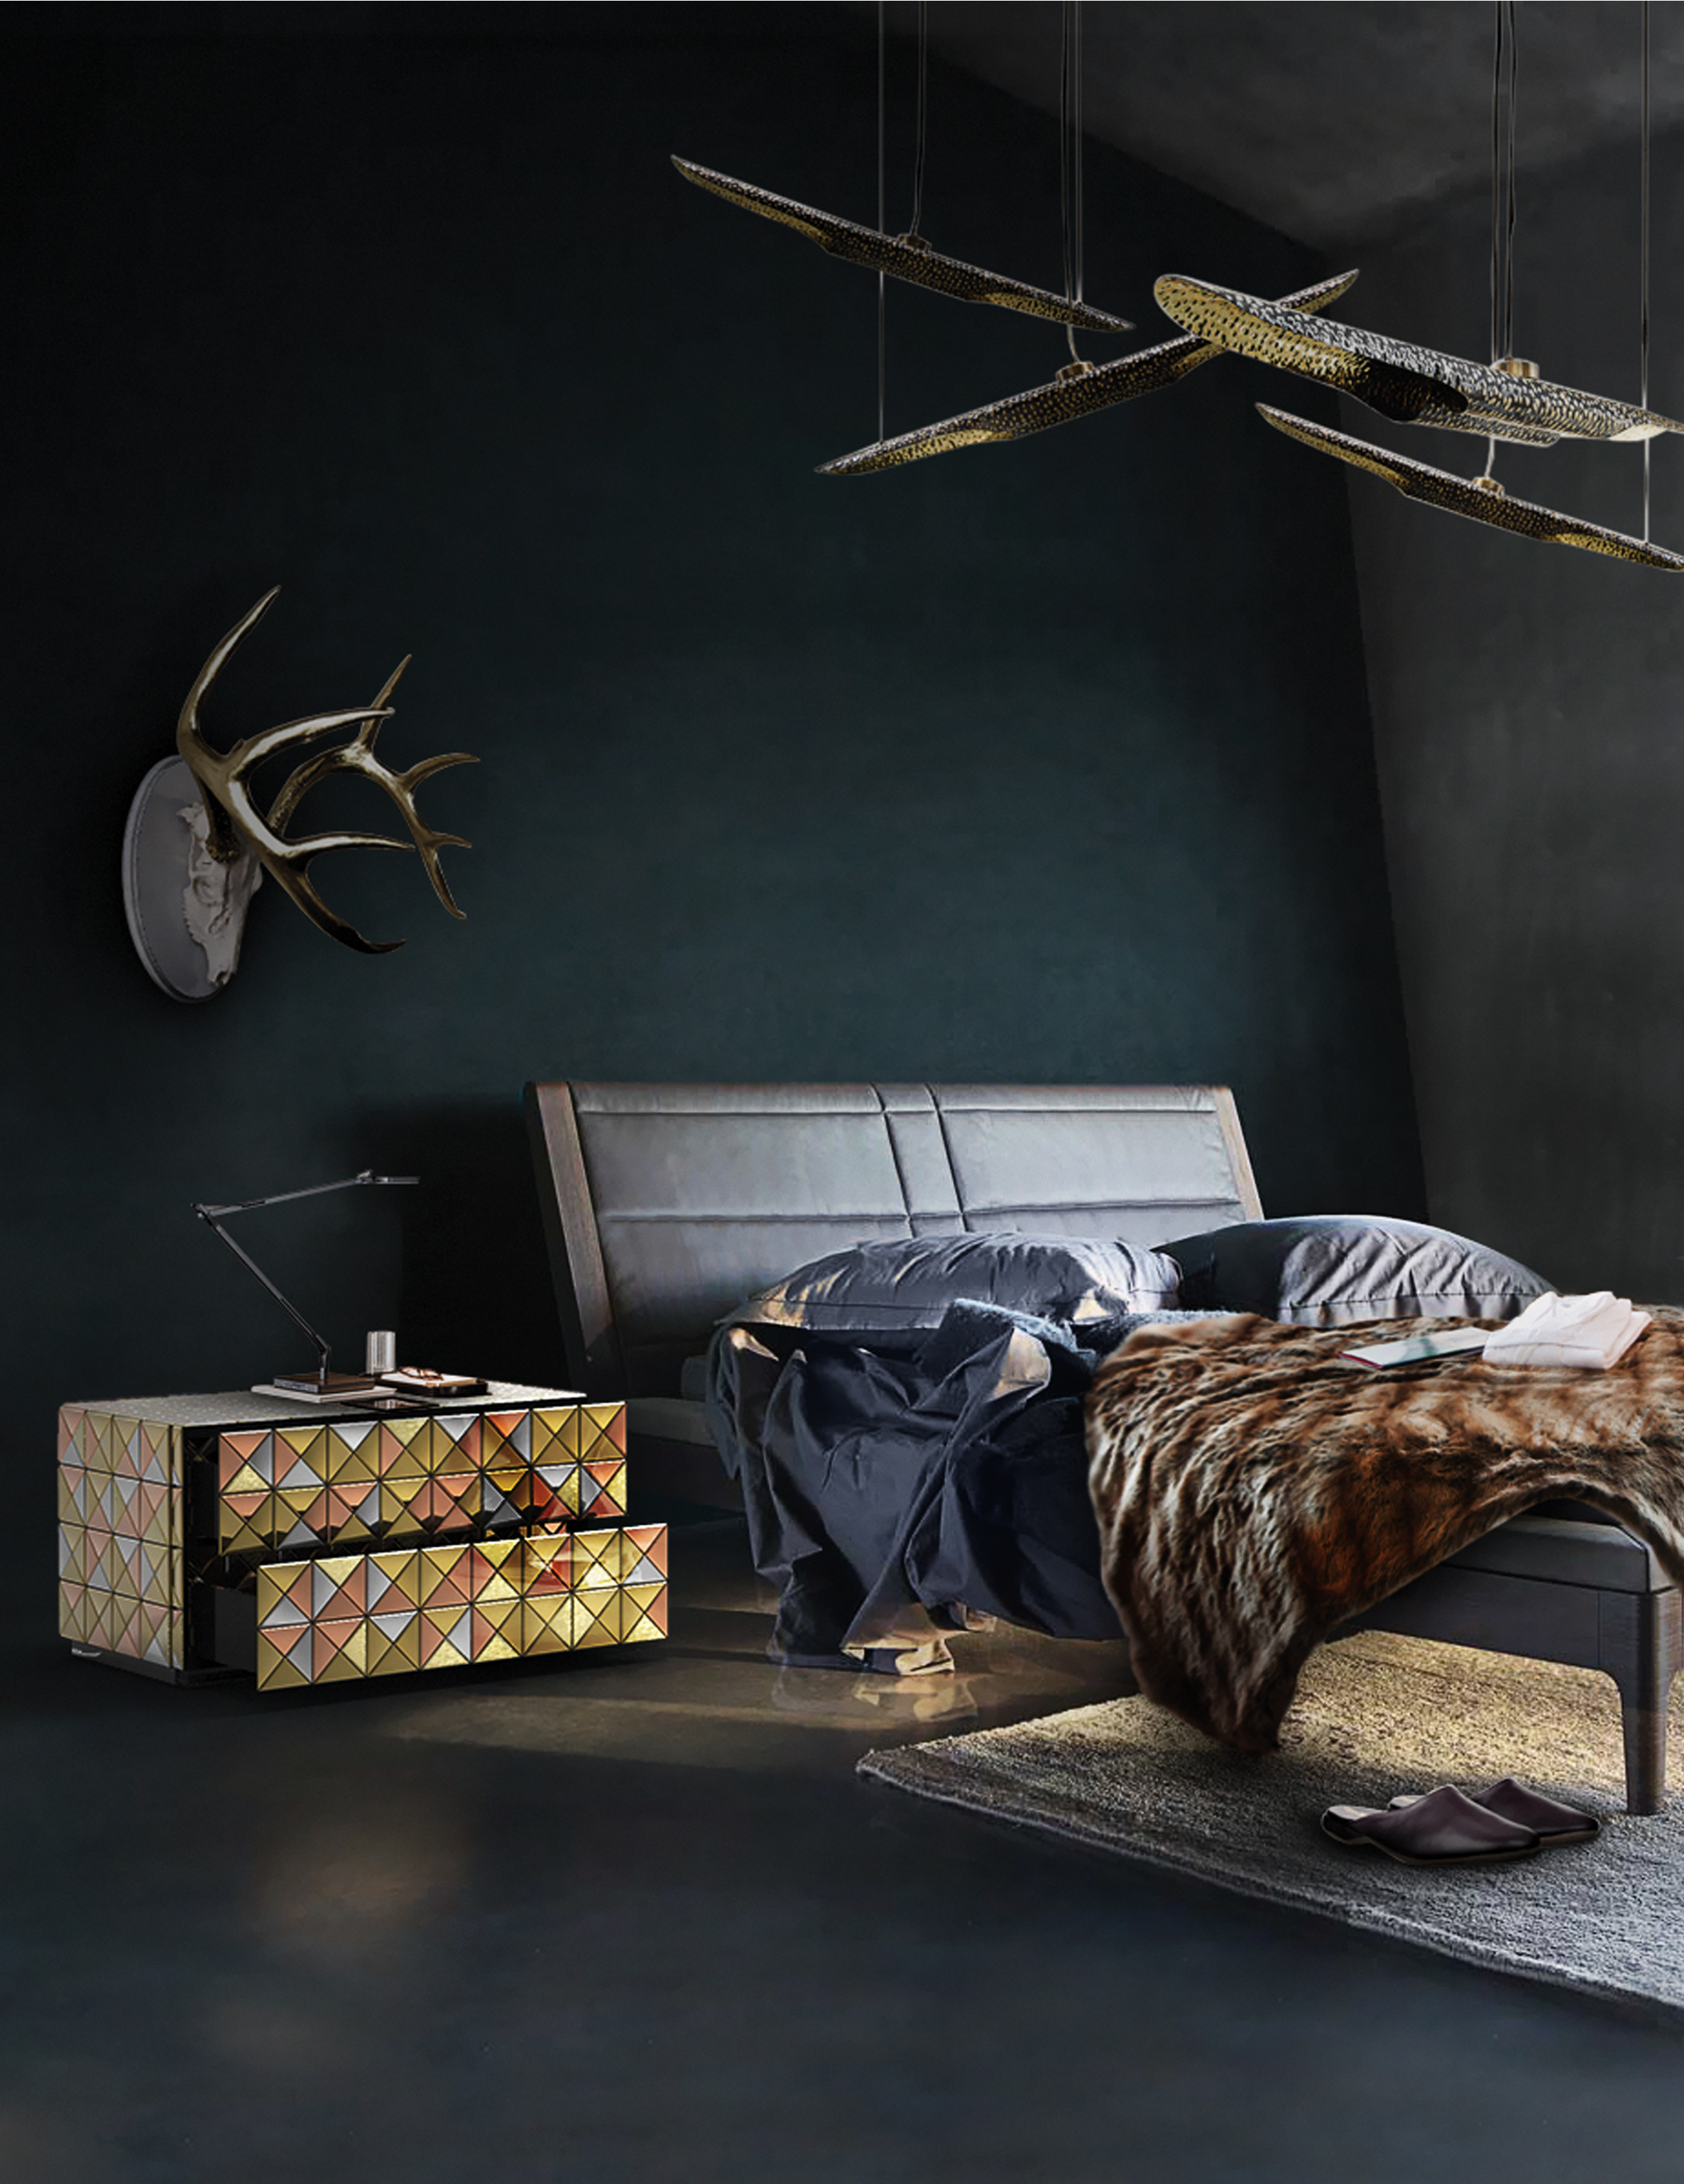 5 Modern Nightstands - Ideas For Your Bedroom Design